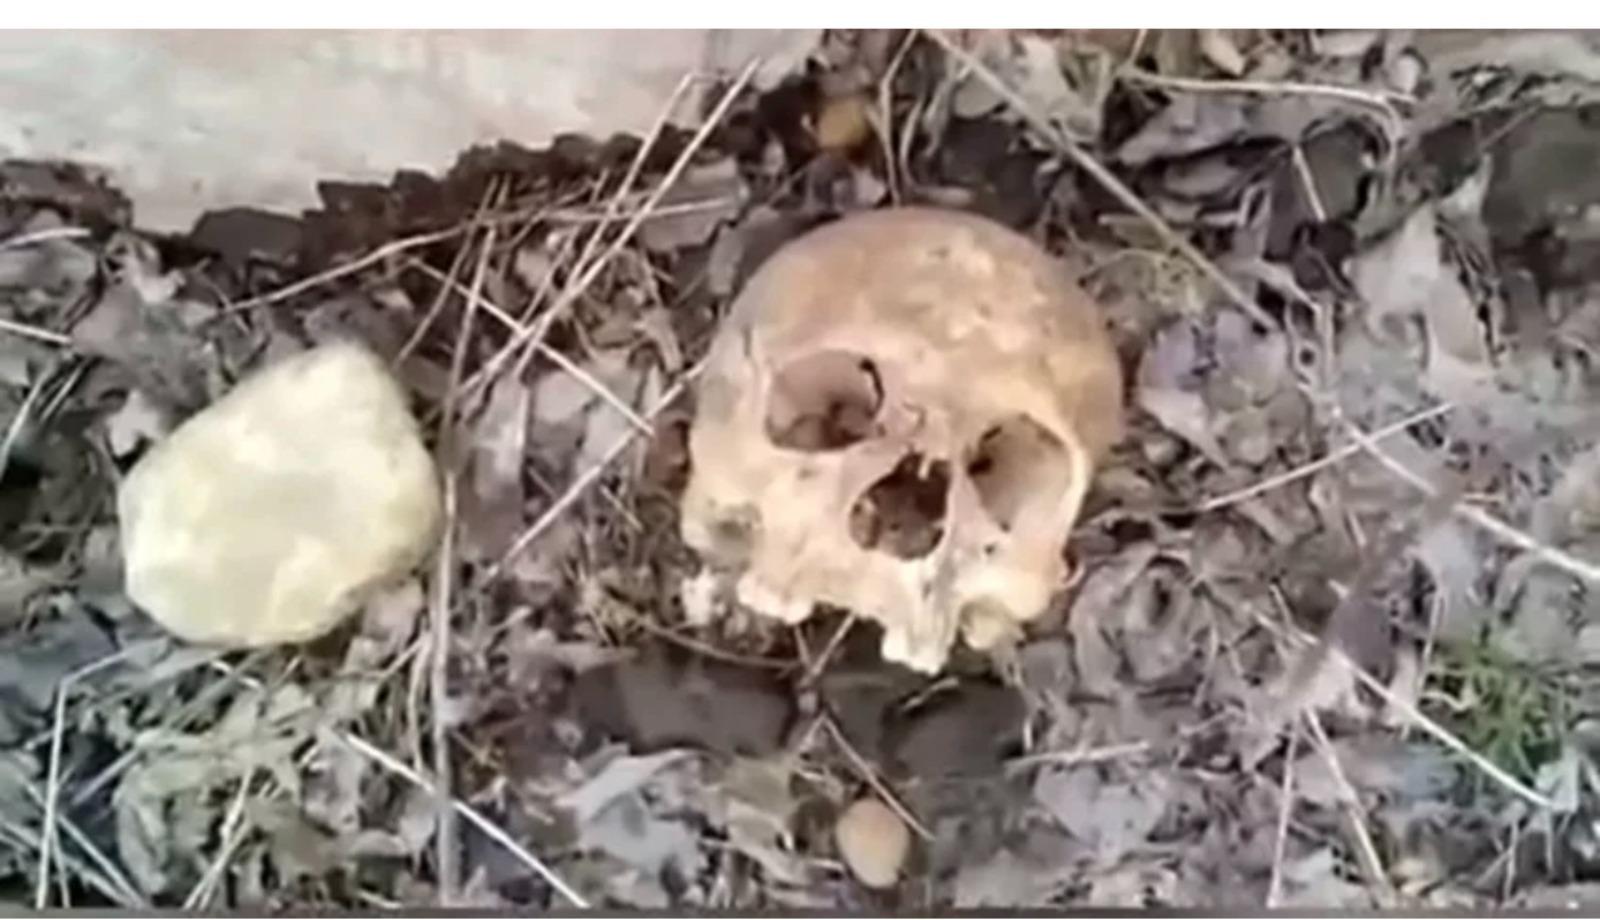  В Салаватском районе Башкирии нашли человеческие останки